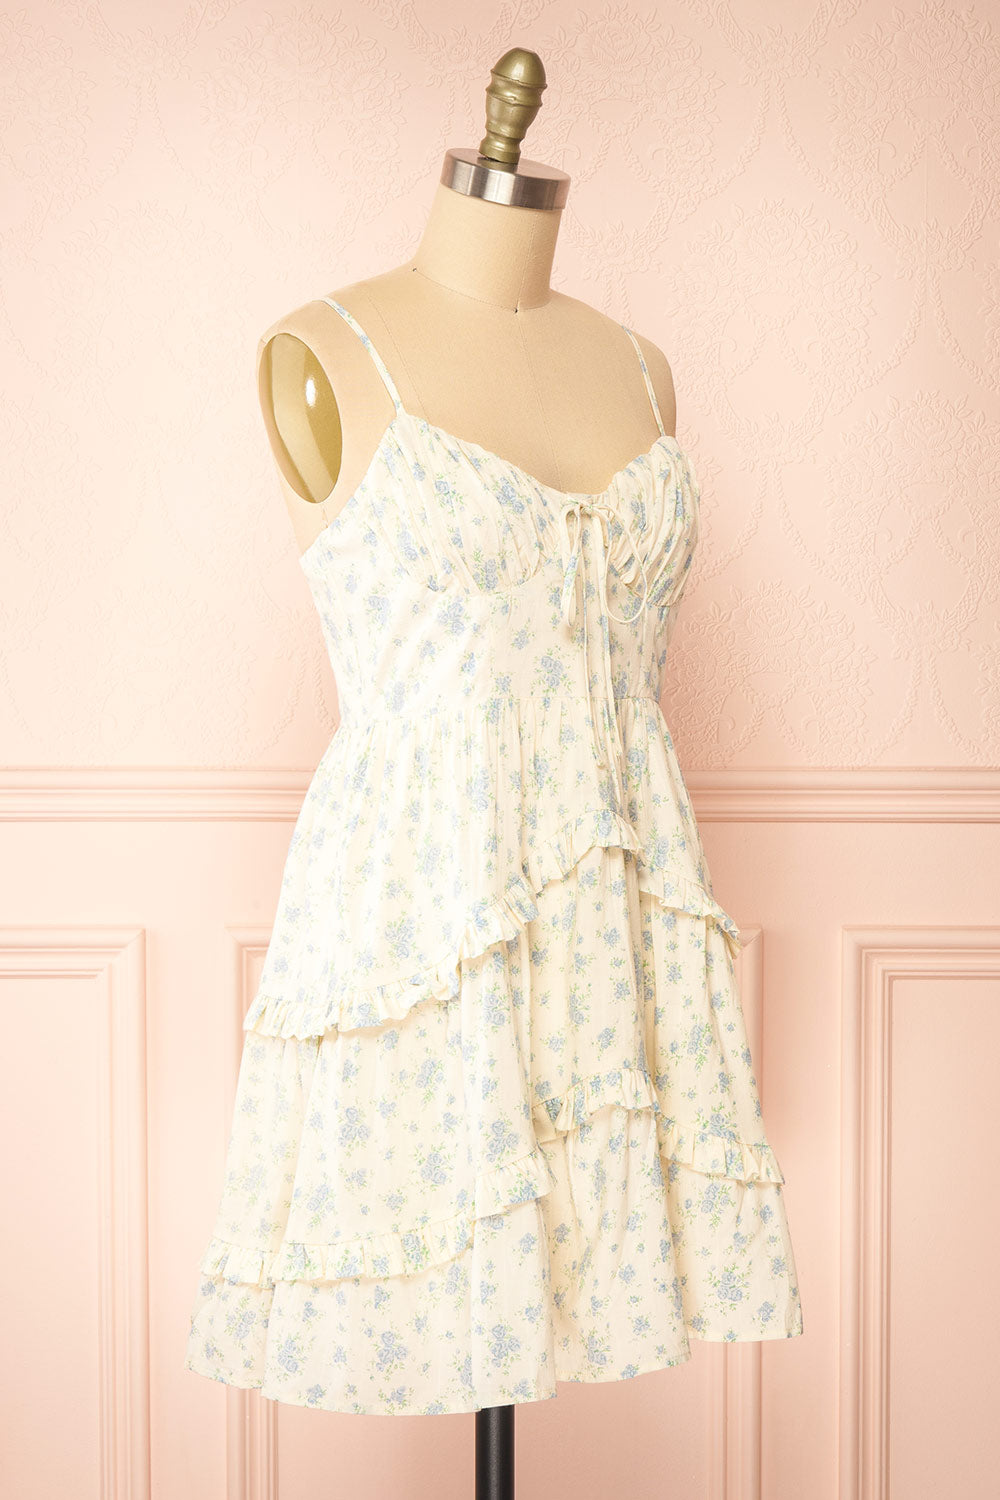 Faelle Short Cream Dress w/ Floral Pattern | Boutique 1861  side view